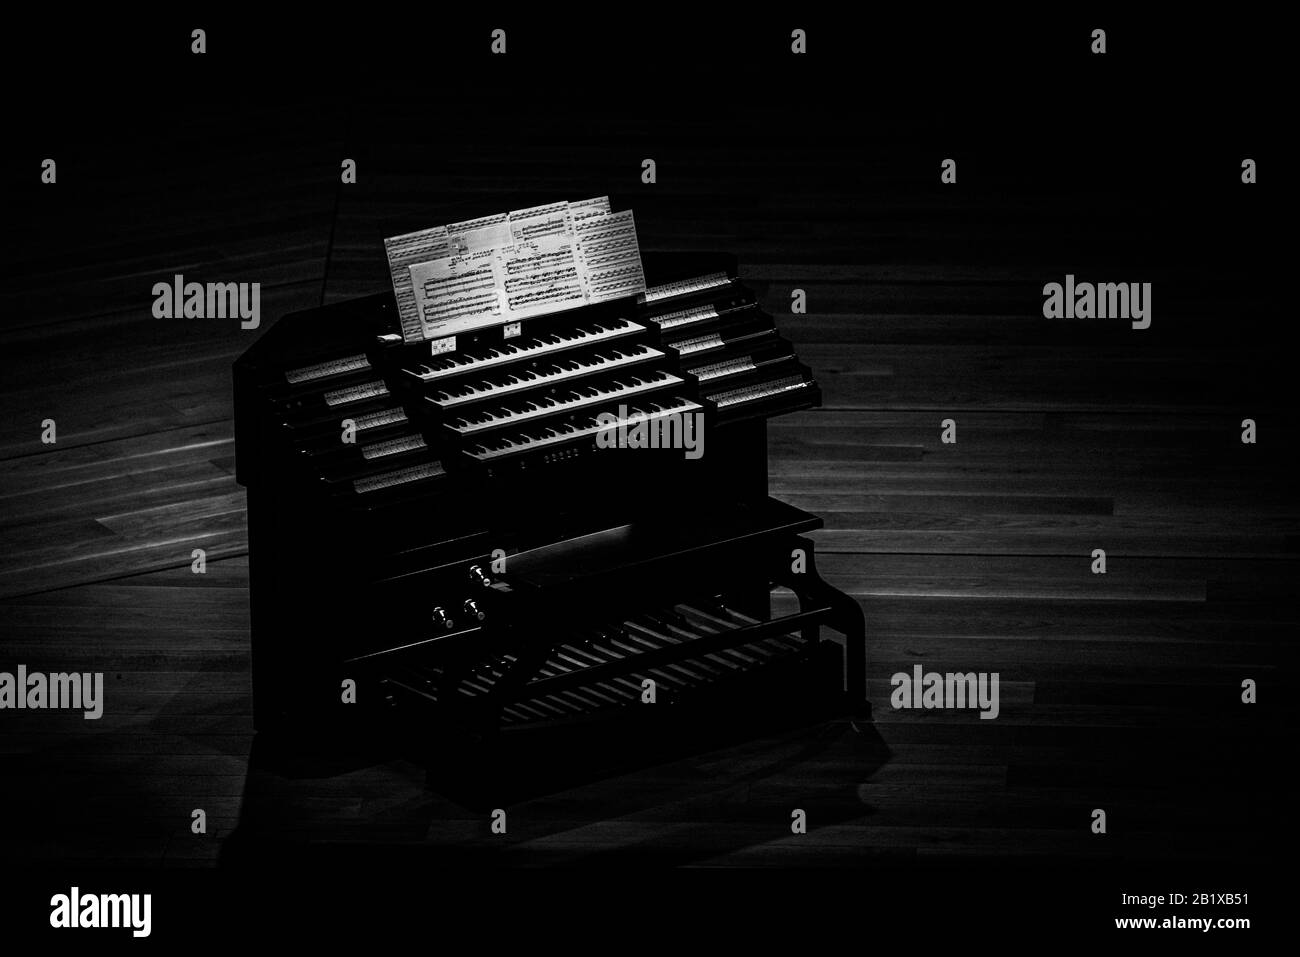 un moderno organo elettrico è posto sul palco illuminato dalle luci, in attesa di artisti che saranno in grado di mostrare ciò che questi organi possono portare all'arte di m. Foto Stock